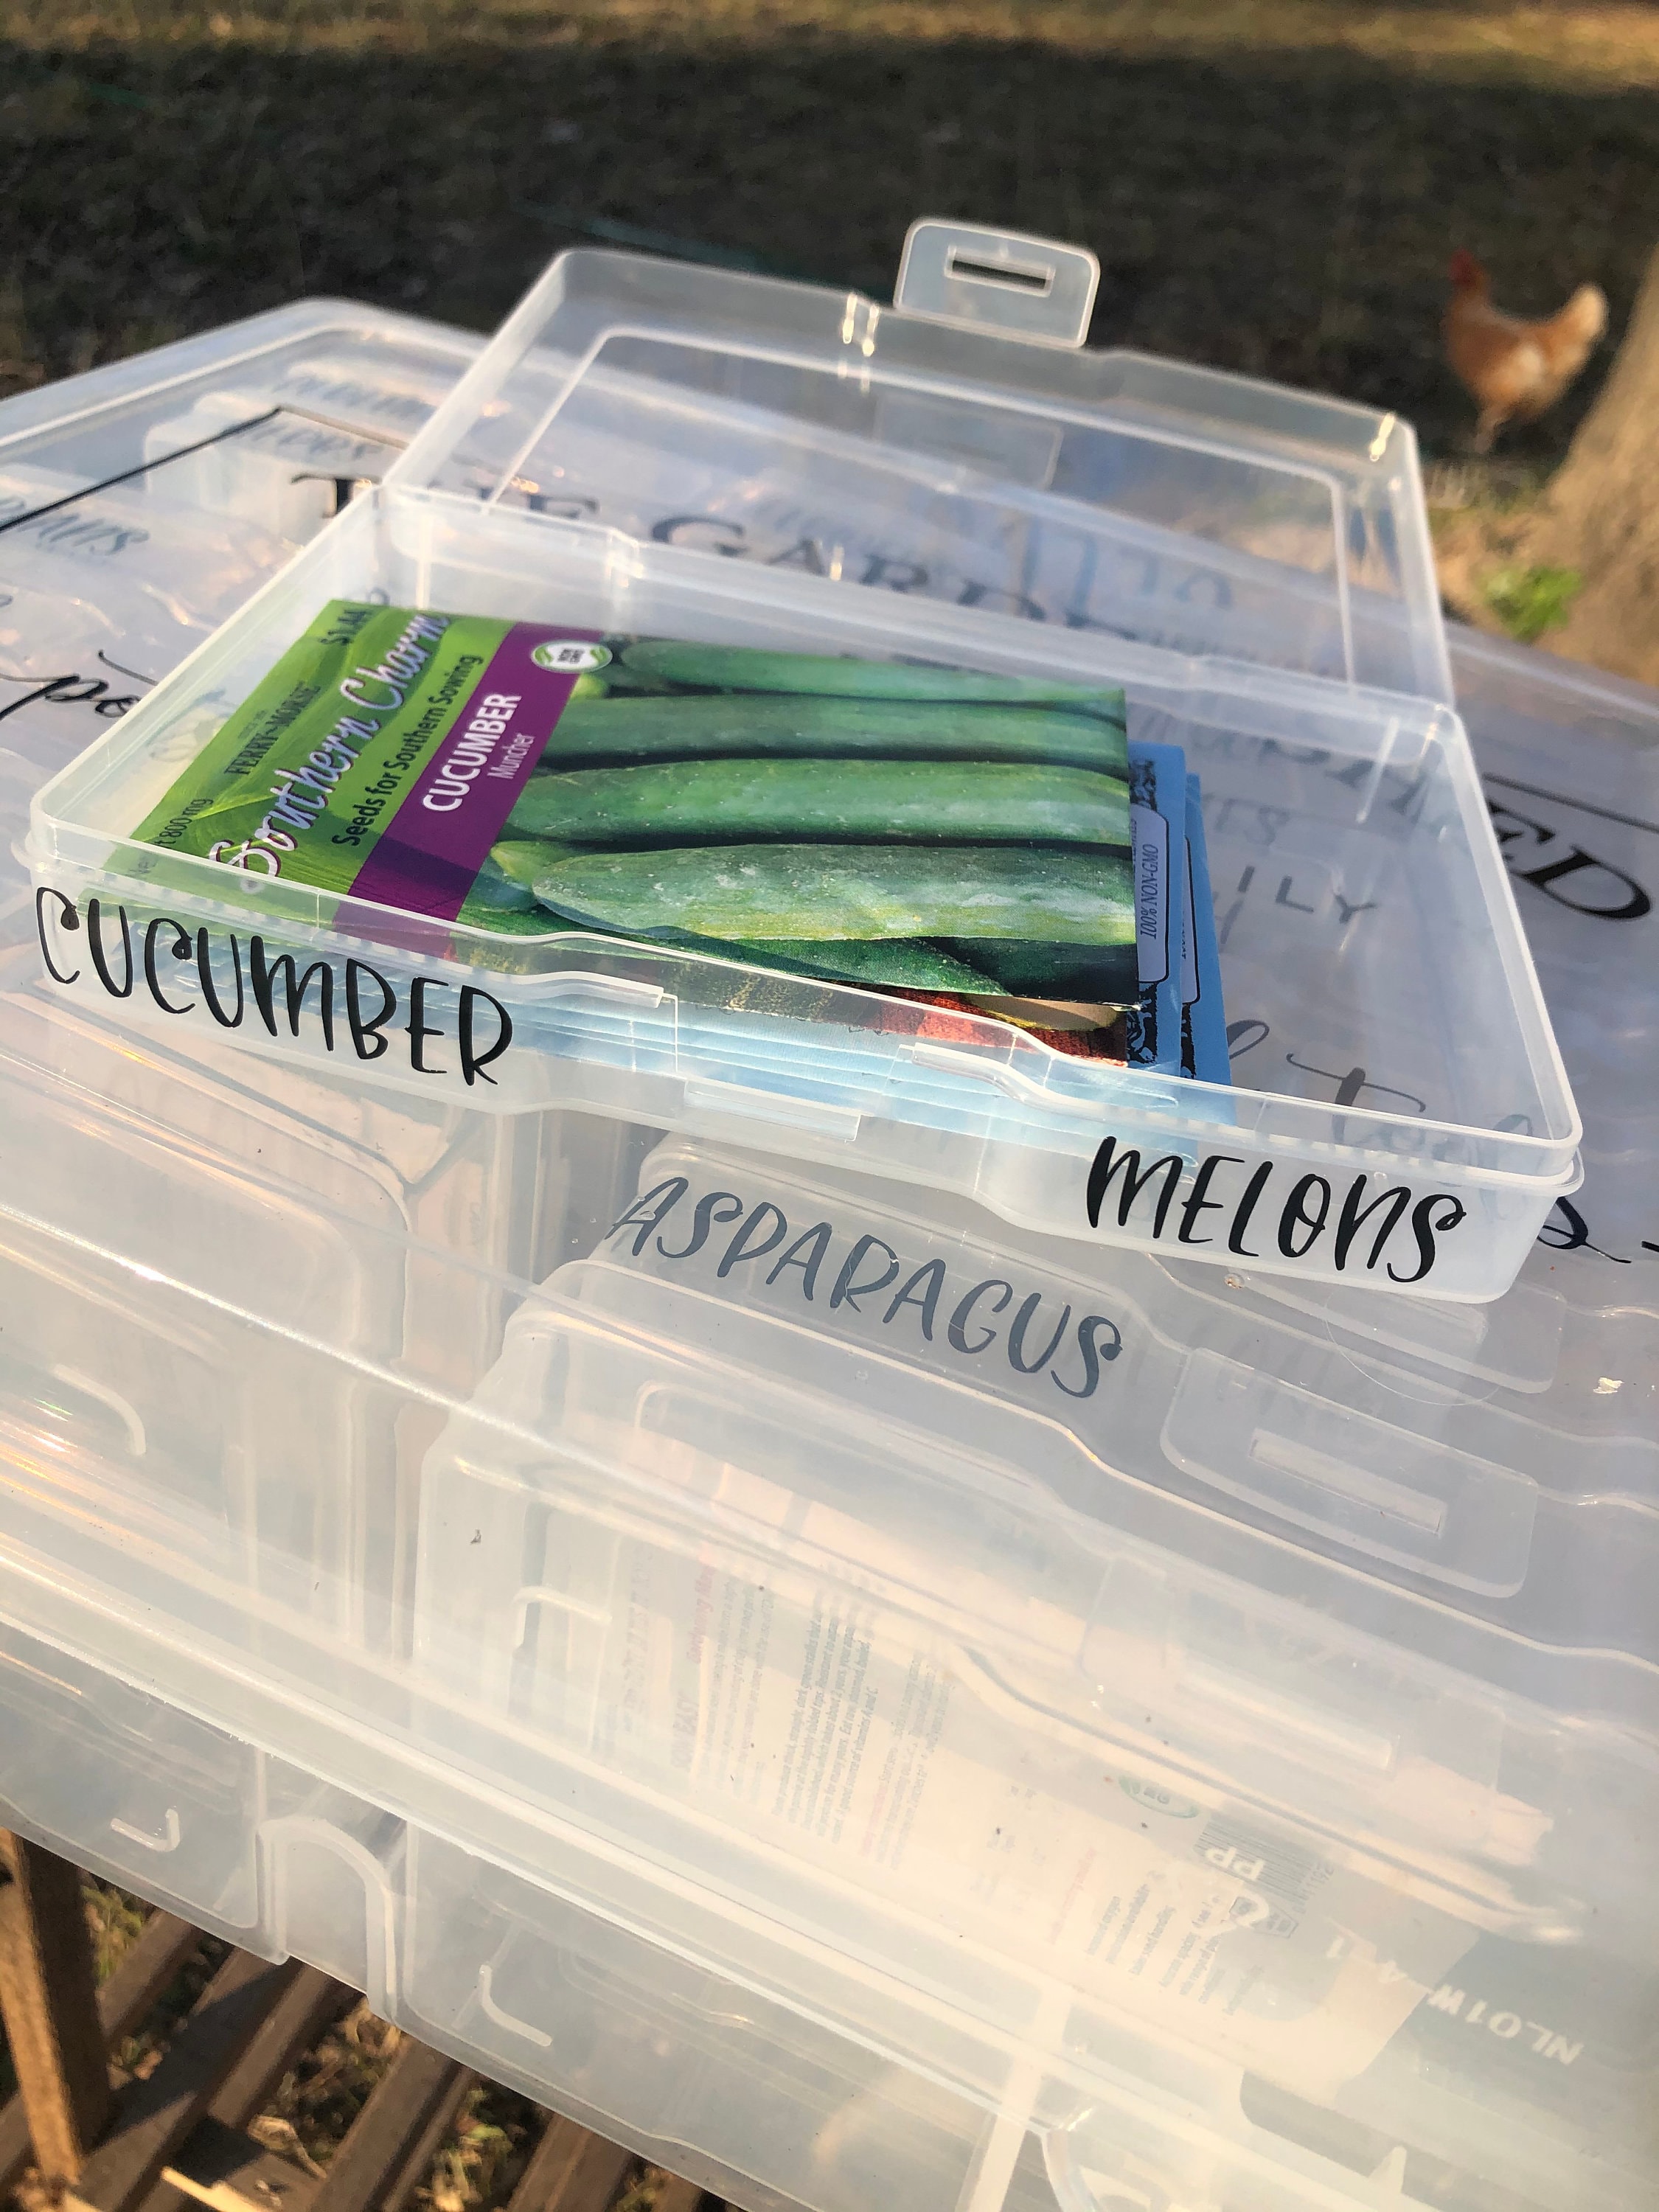 Garden Seed Storage Organizer Binder With 80 Pockets Garden - Temu Australia